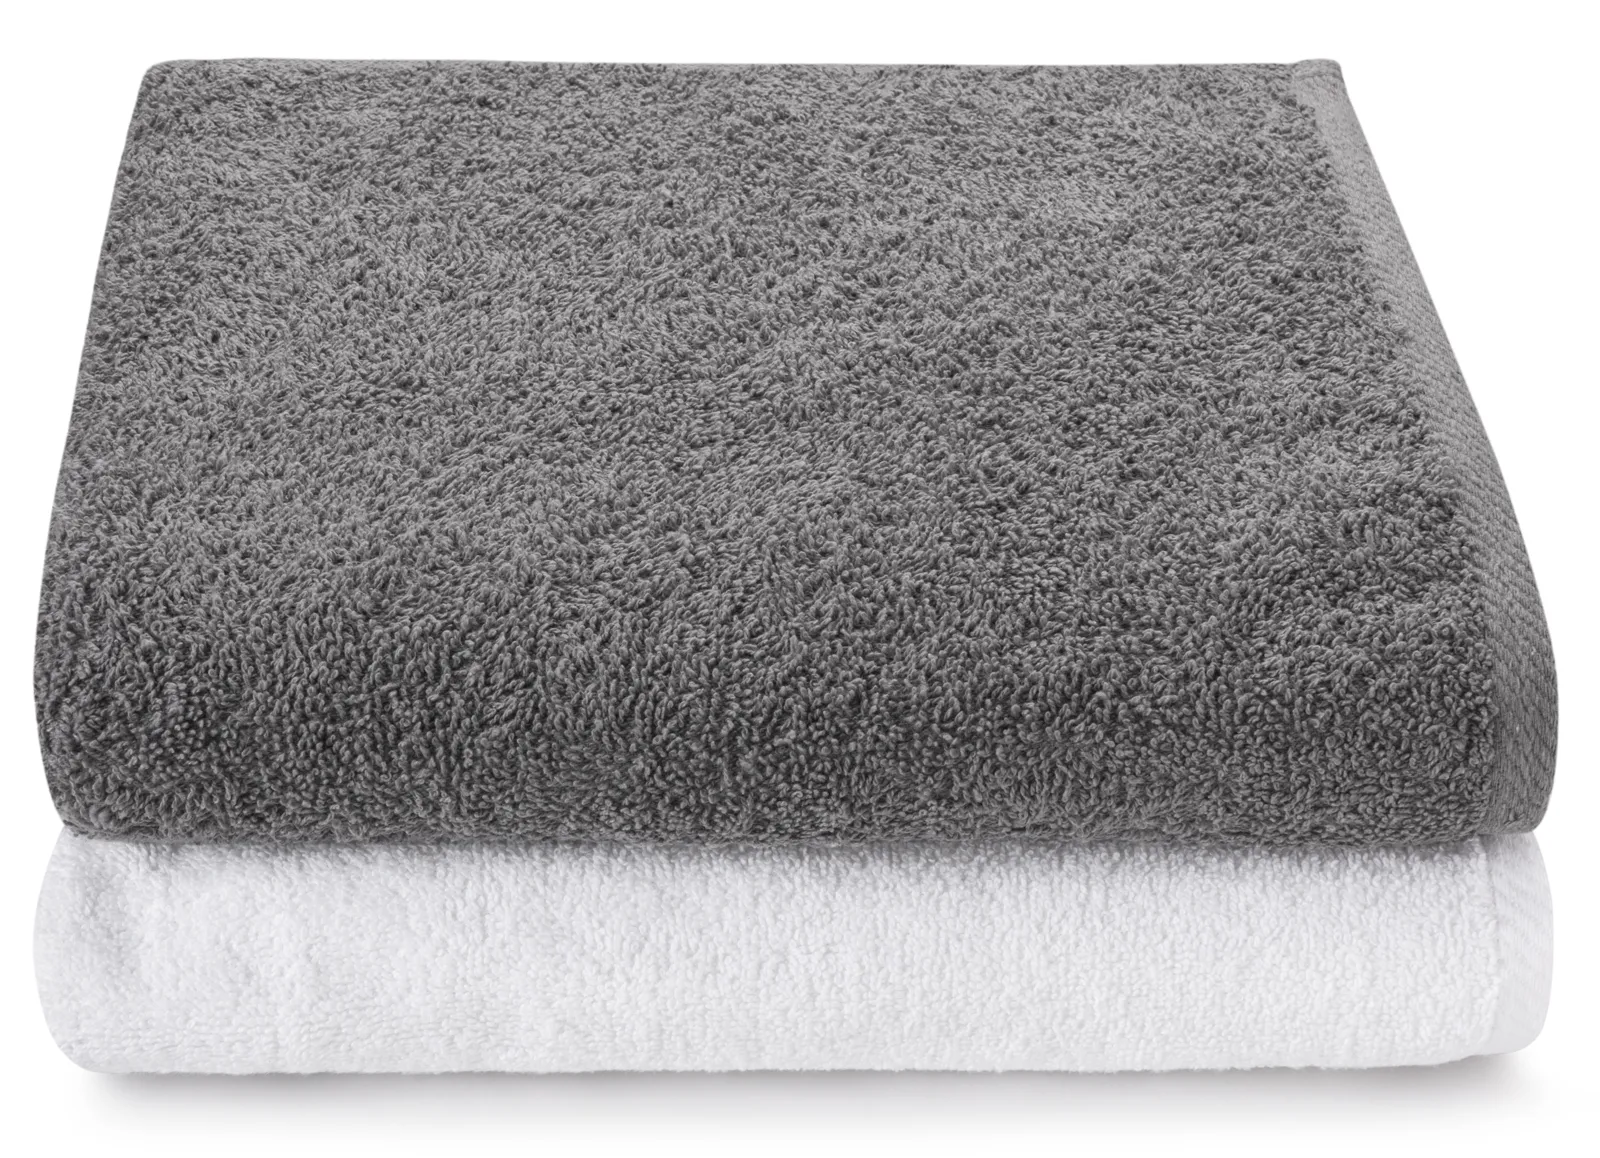 Zestaw 2 dużych ręczników kąpielowych Parma 150×100 cm white, gray 500 g/m², dla wysokich osób